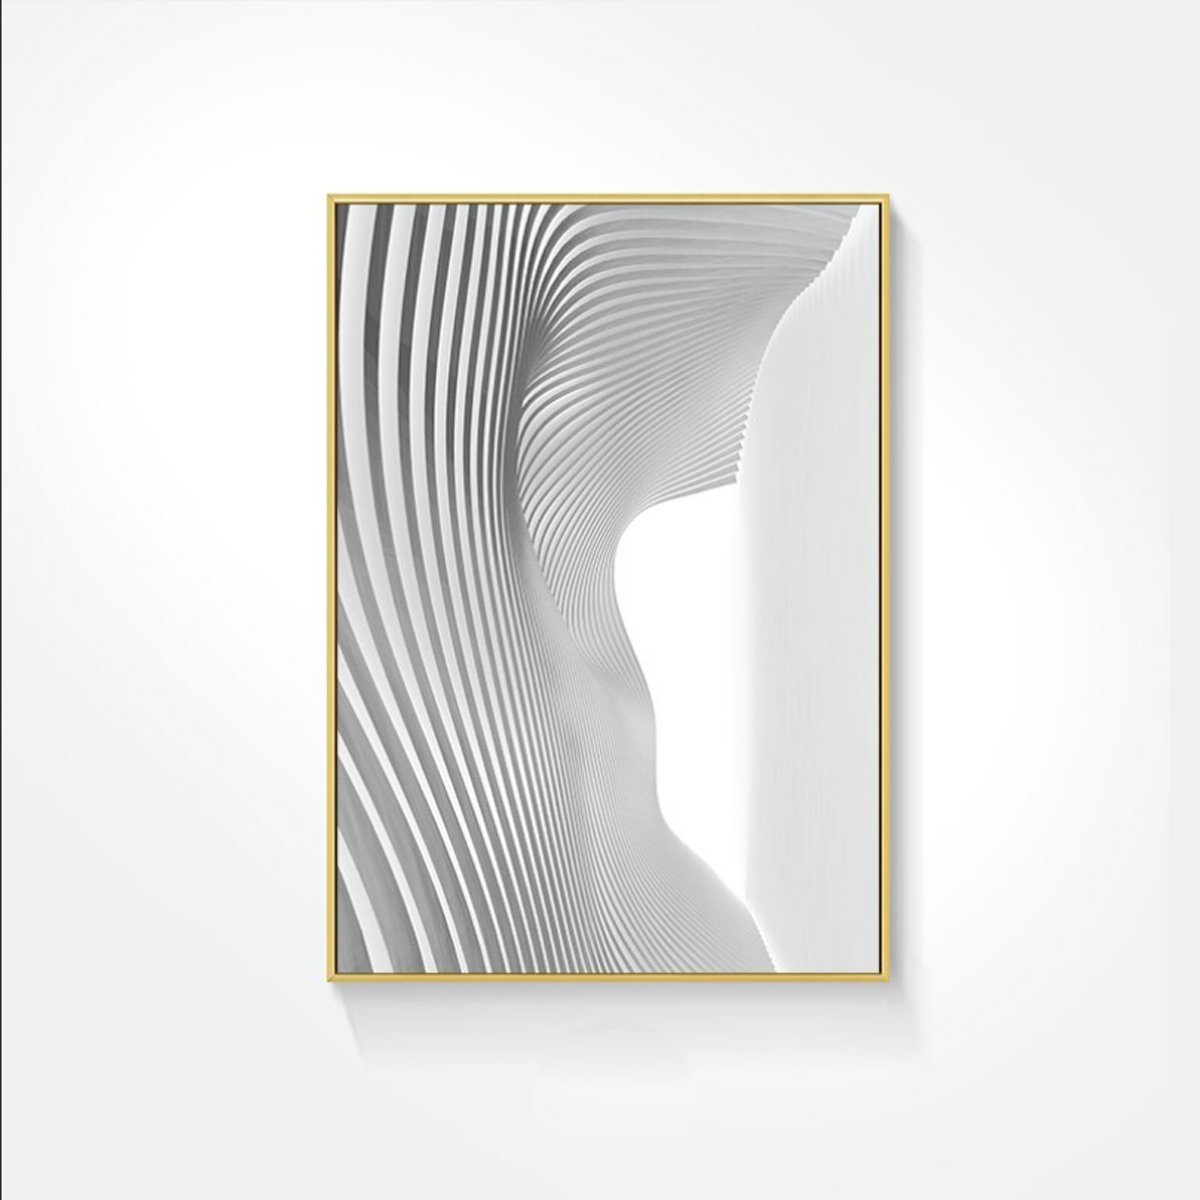 TPFLiving Kunstdruck (OHNE RAHMEN) Poster - Leinwand - Wandbild, Nordic Art - Abstrakte Formen - Bilder Wohnzimmer - (3 Motive in 7 verschiedenen Größen zur Auswahl), Farben: gold, grün, schwarz und weiß - Größe: 21x30cm